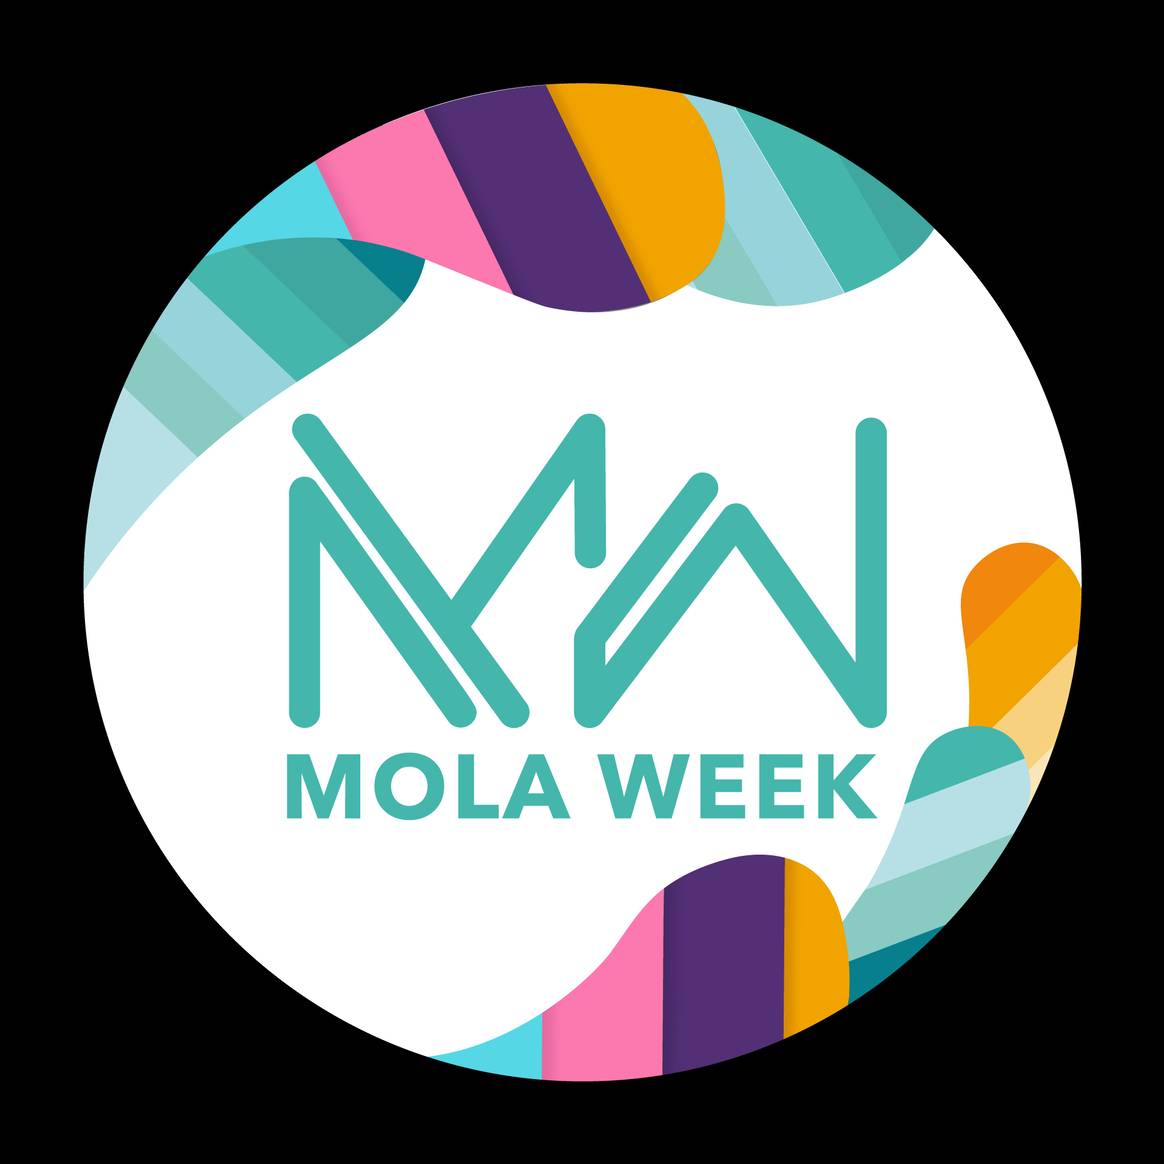 Mola Week